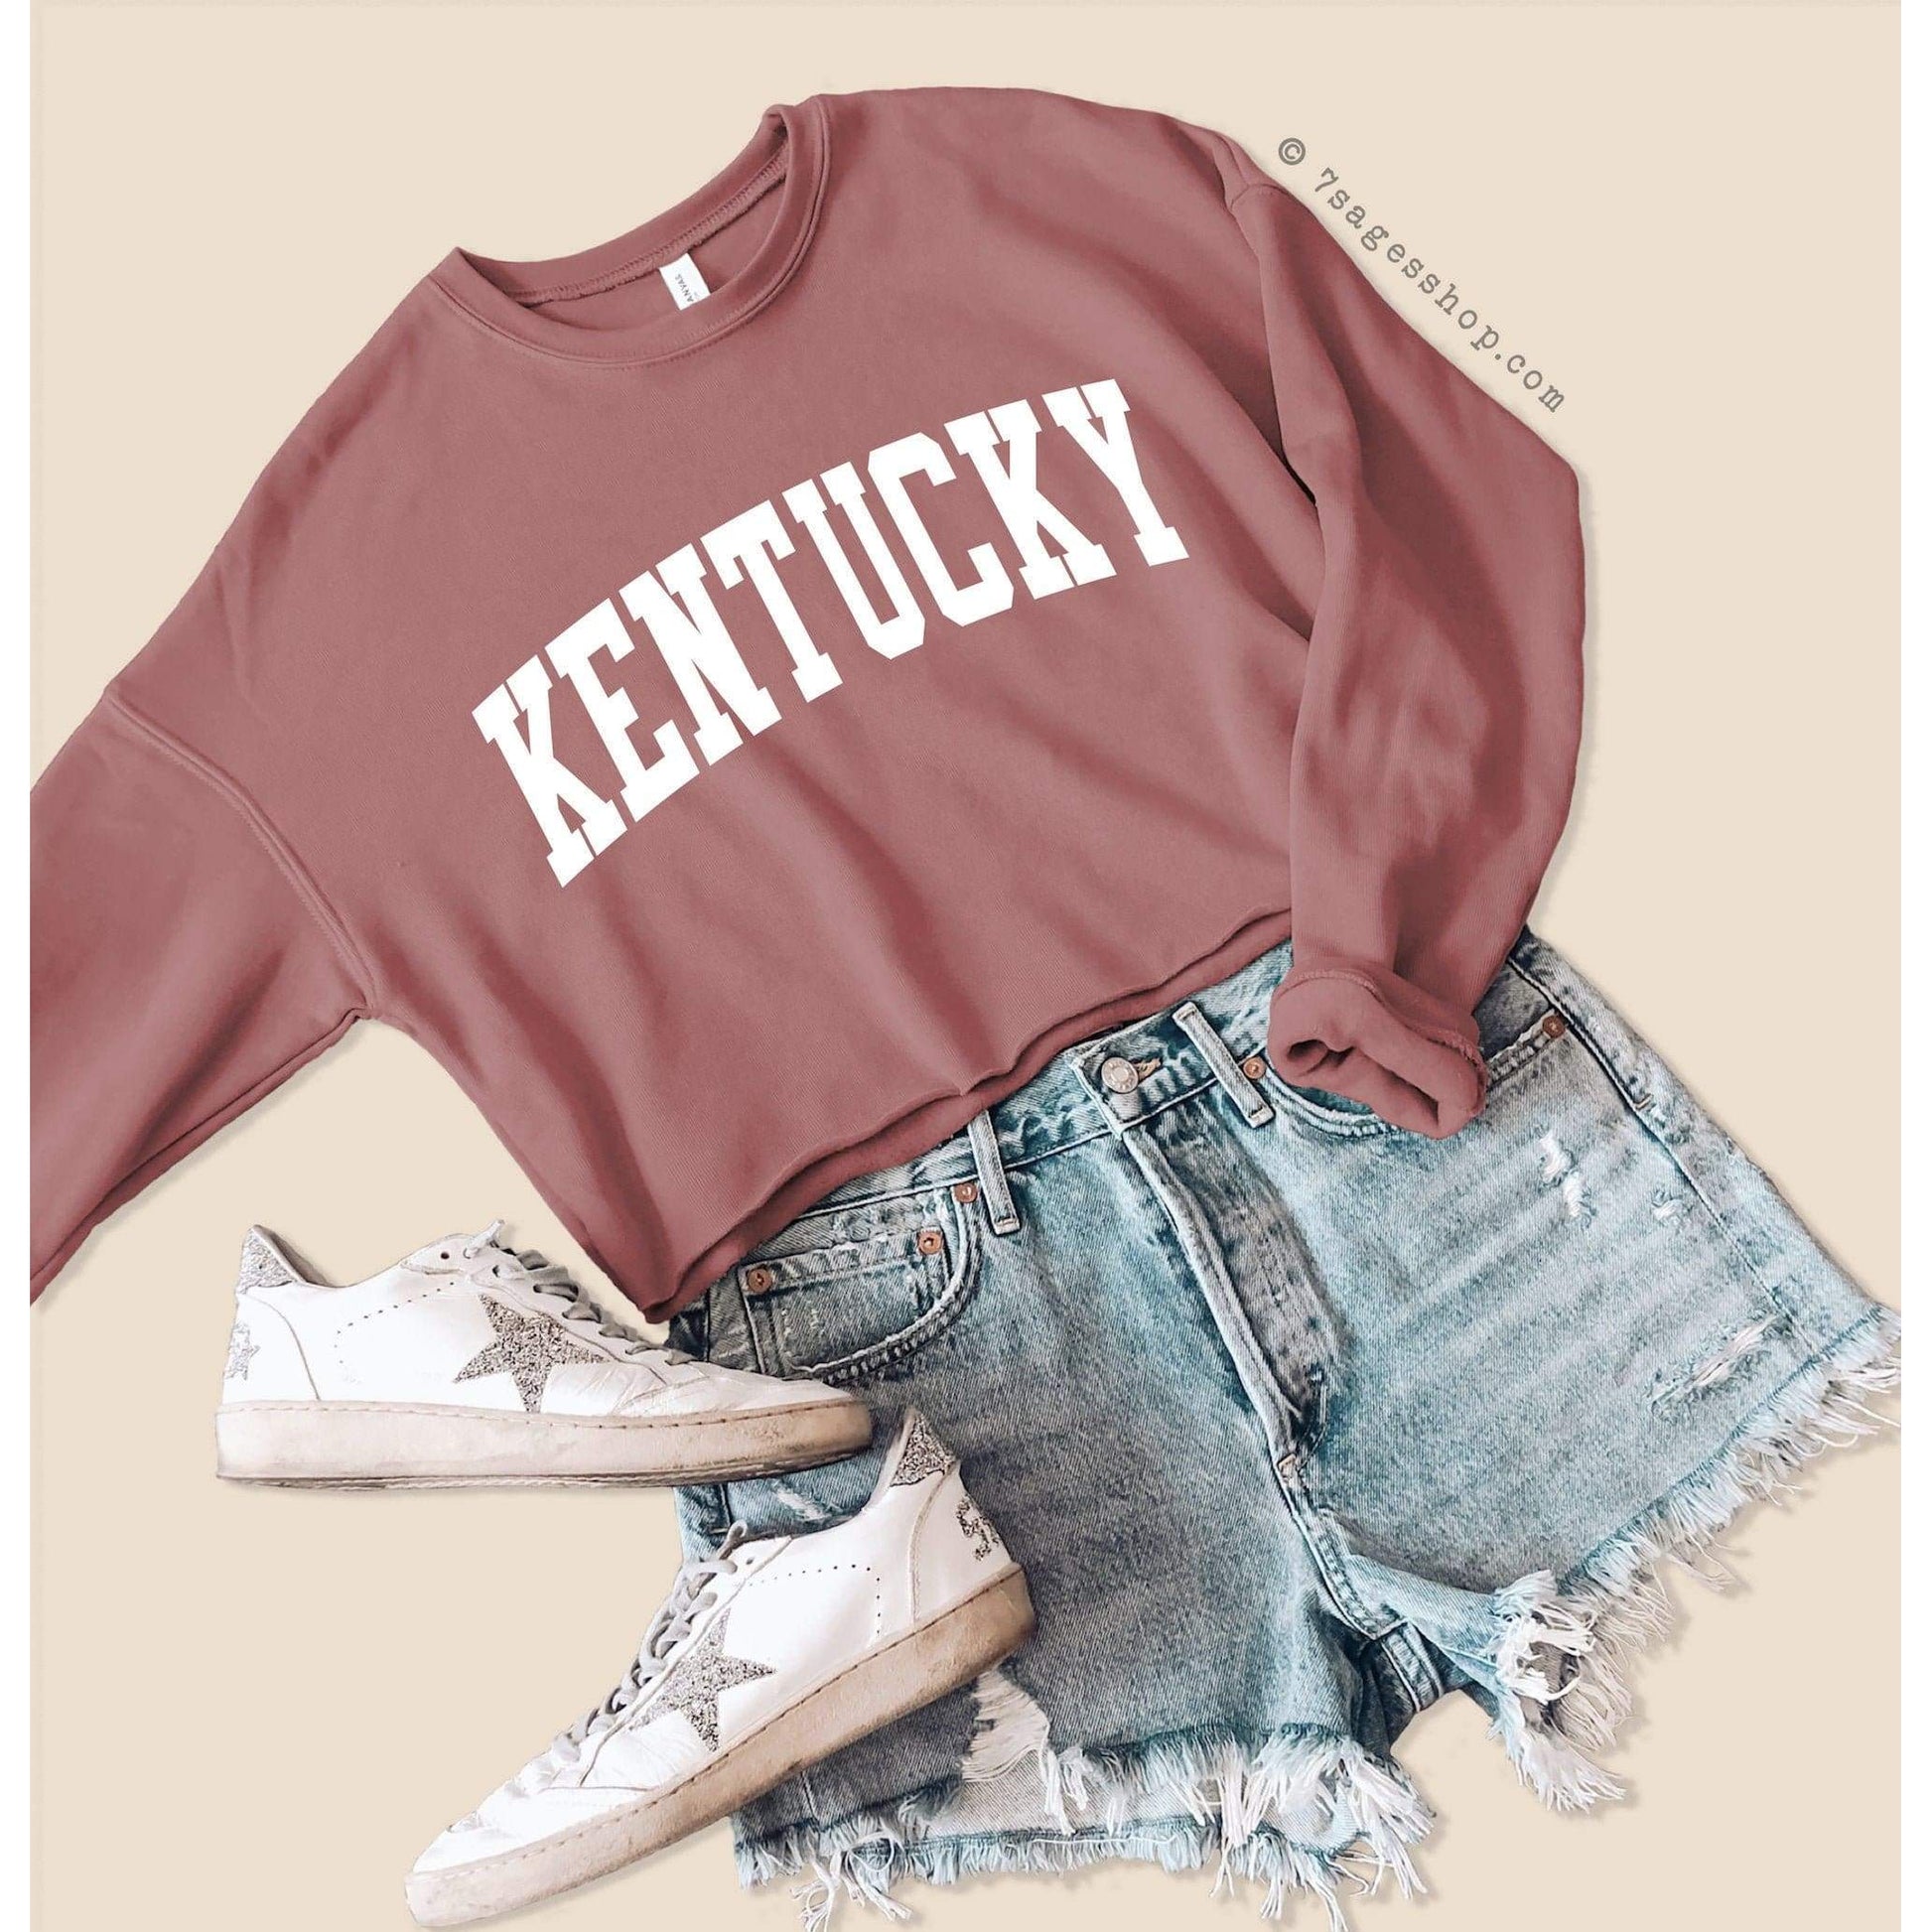 Kentucky Sweatshirt - Kentucky Cropped Sweatshirt - Kentucky Shirts - University of Kentucky Crop Top - Fleece Sweatshirt